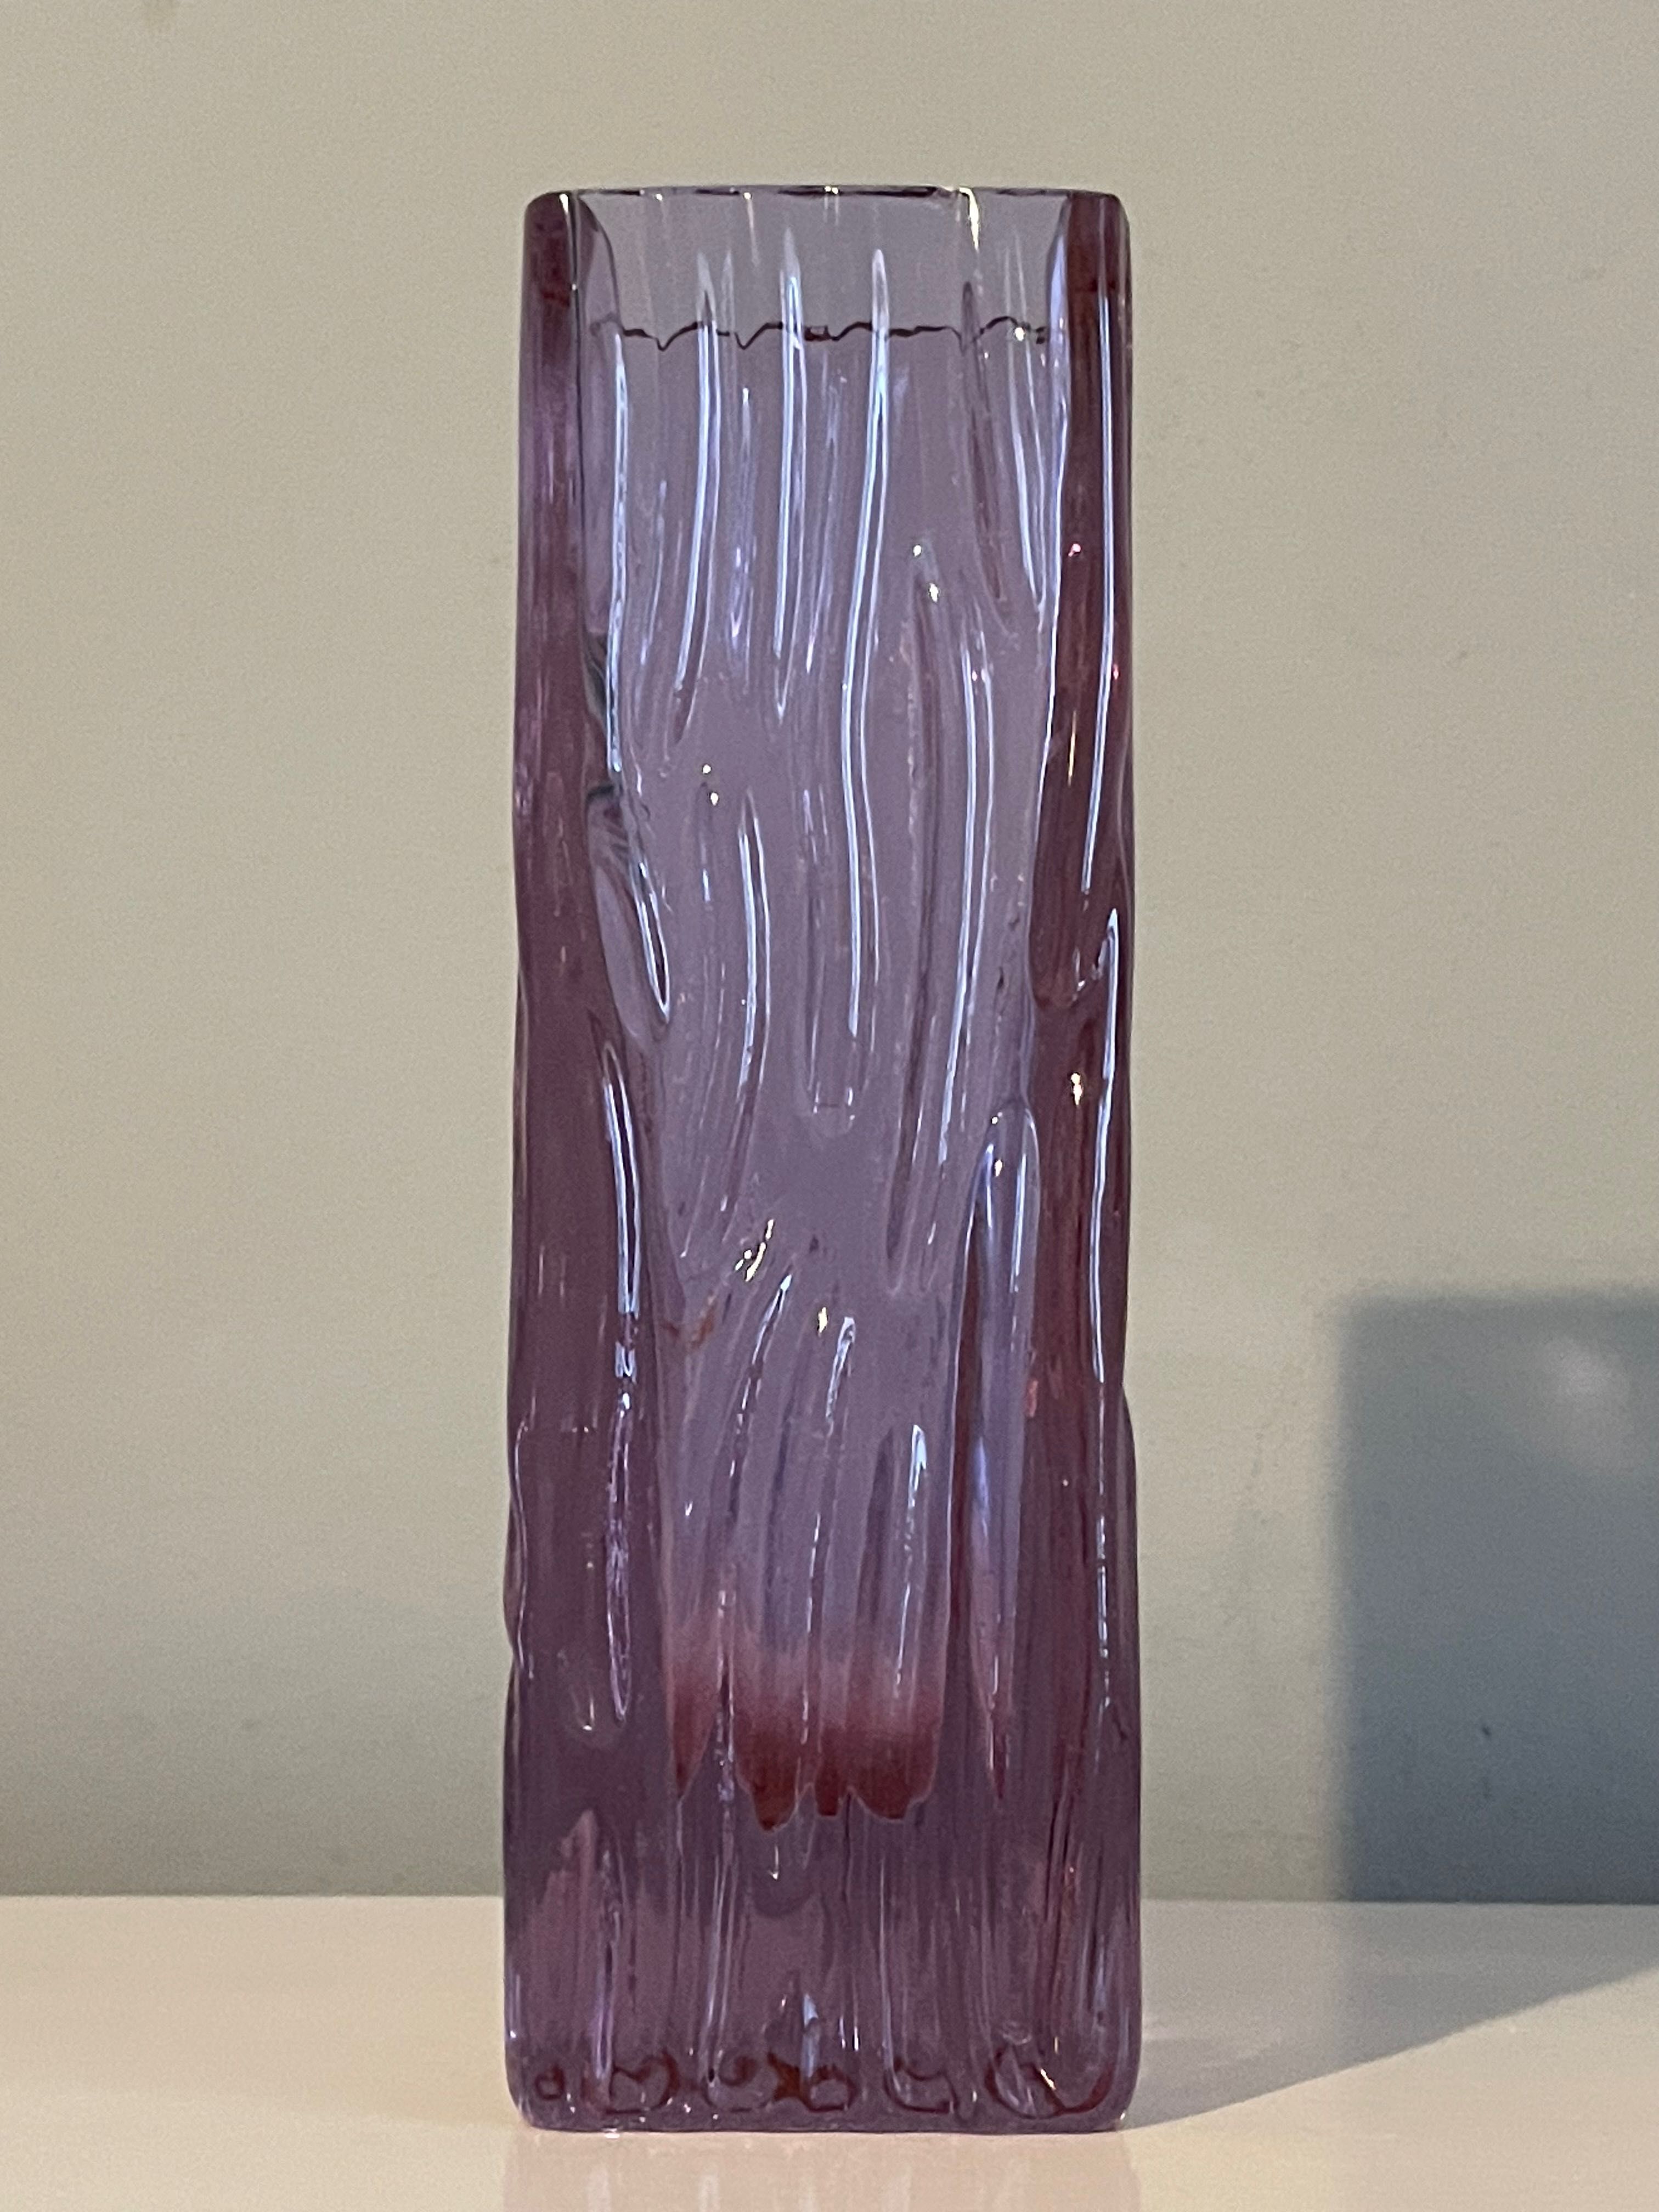 Szklany wazon. Grube ciężkie szkło kolorowe